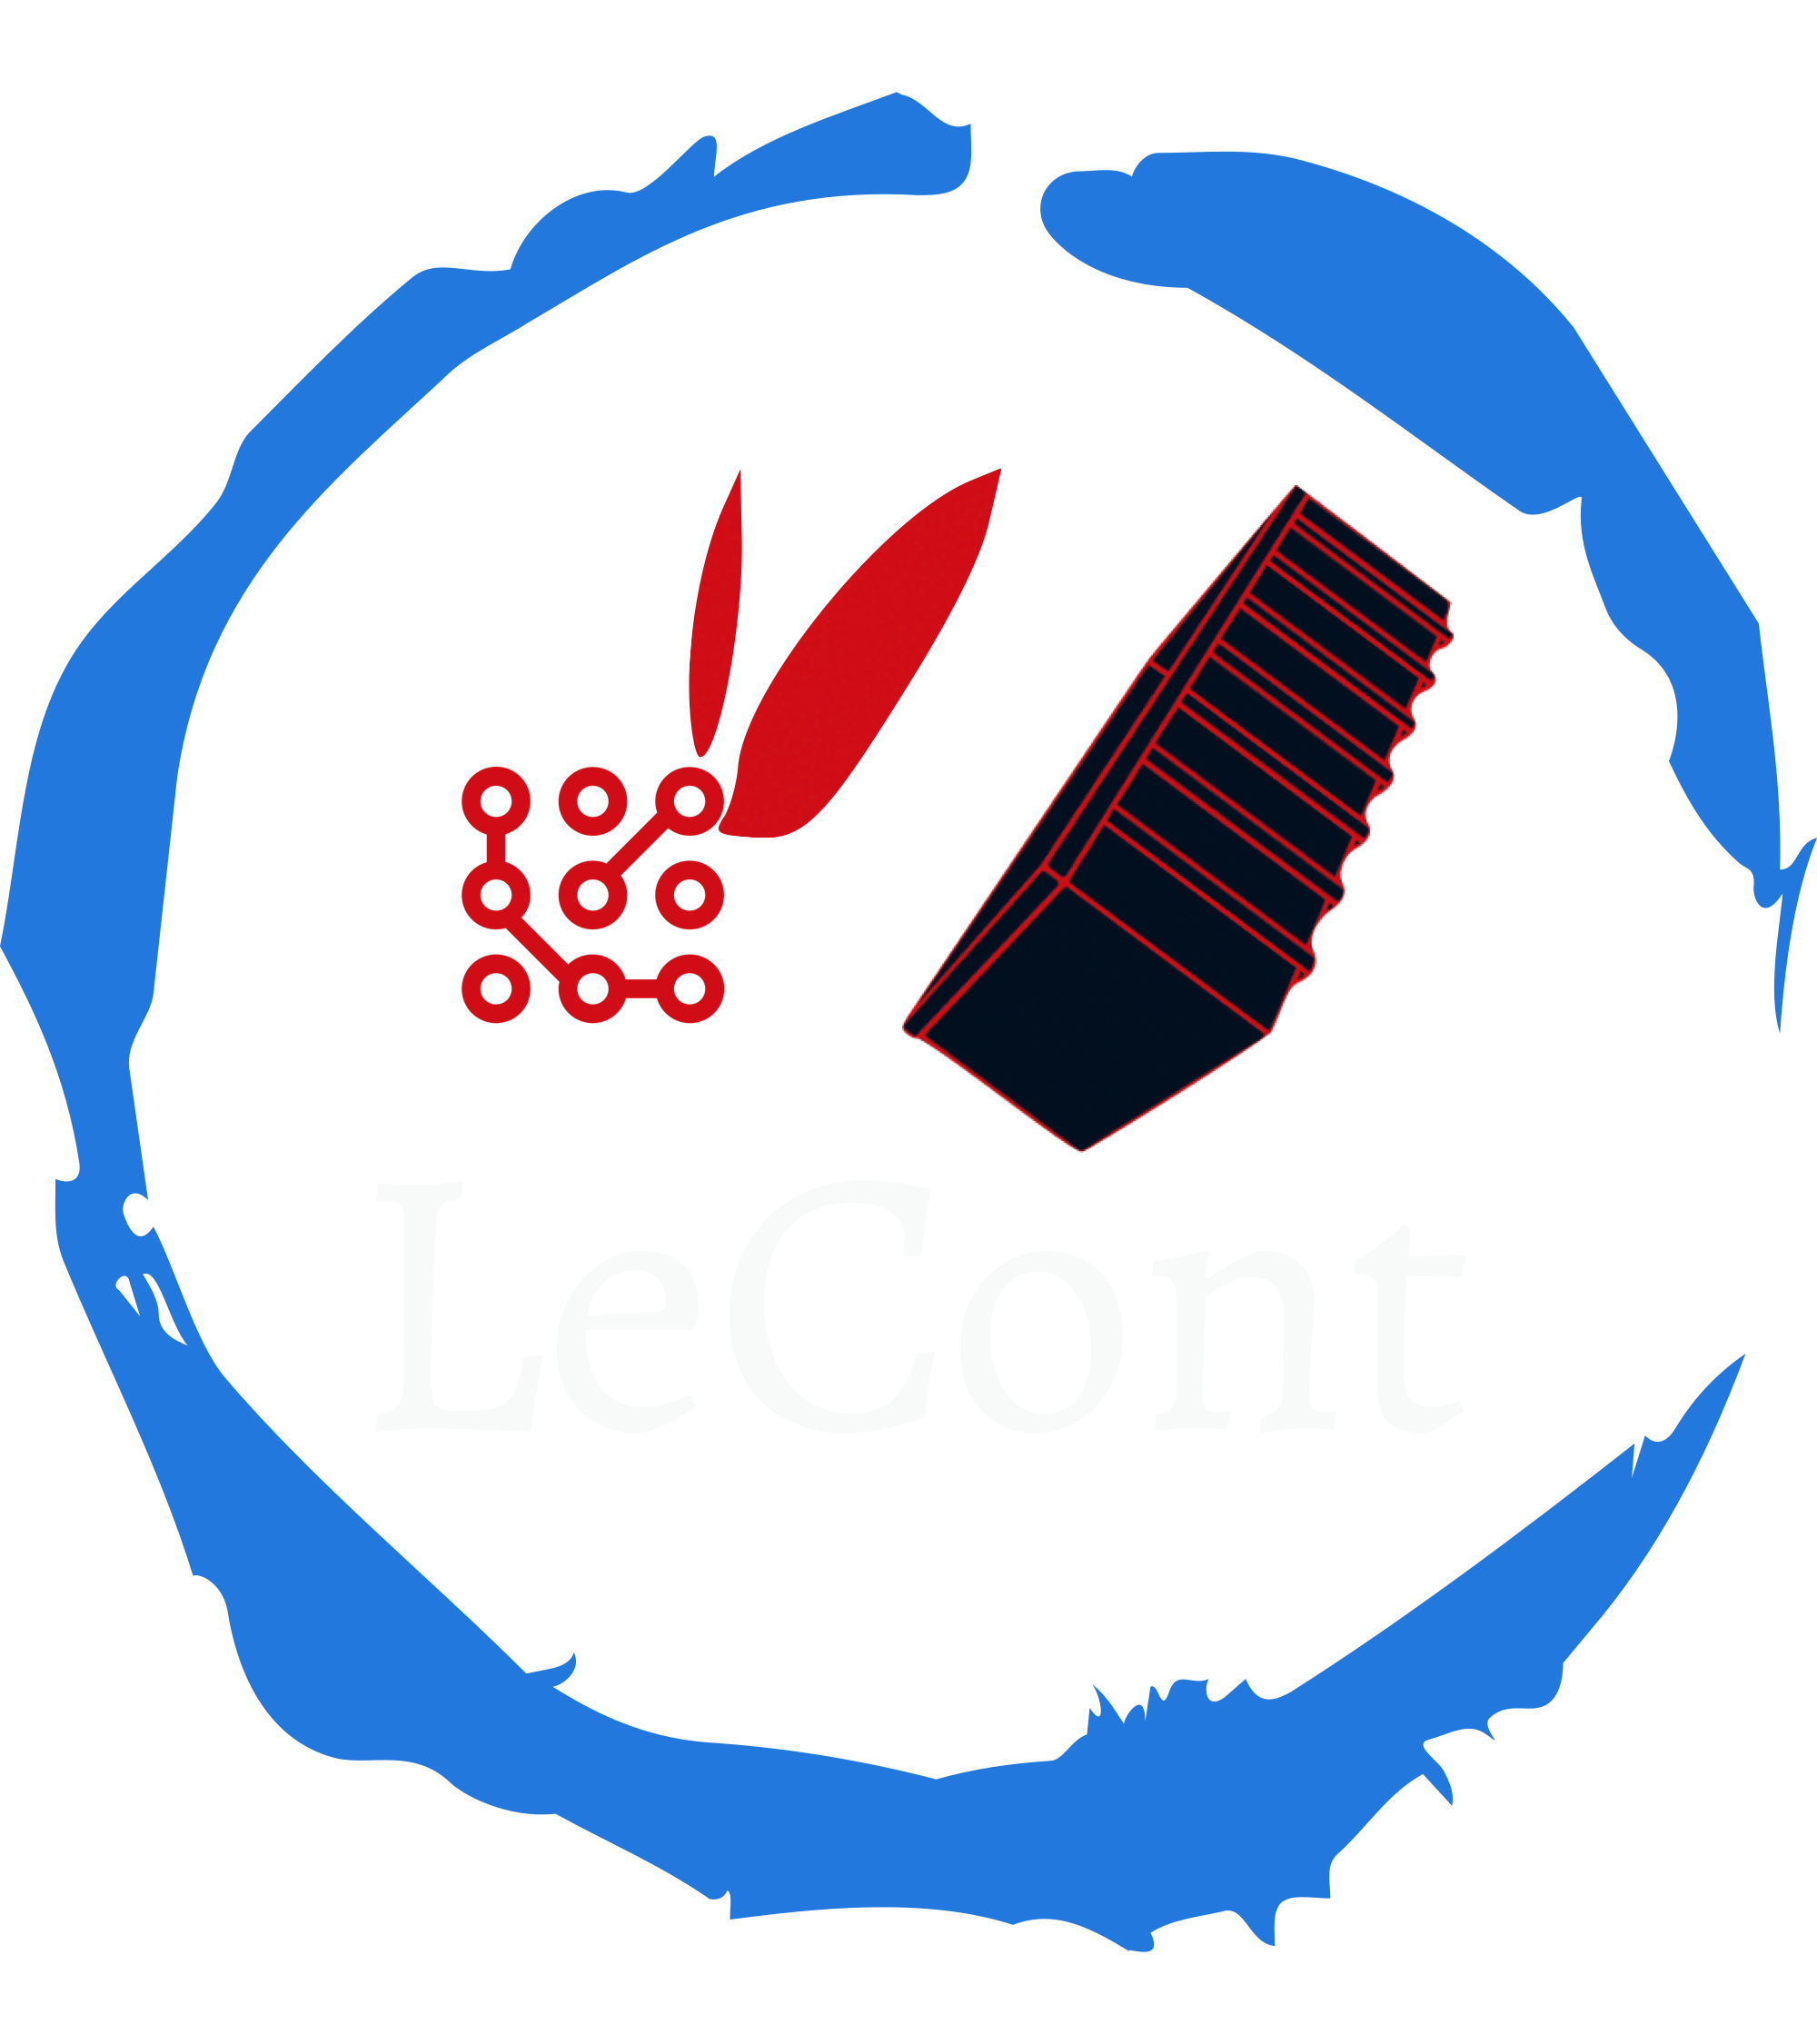 lecont-logo.png